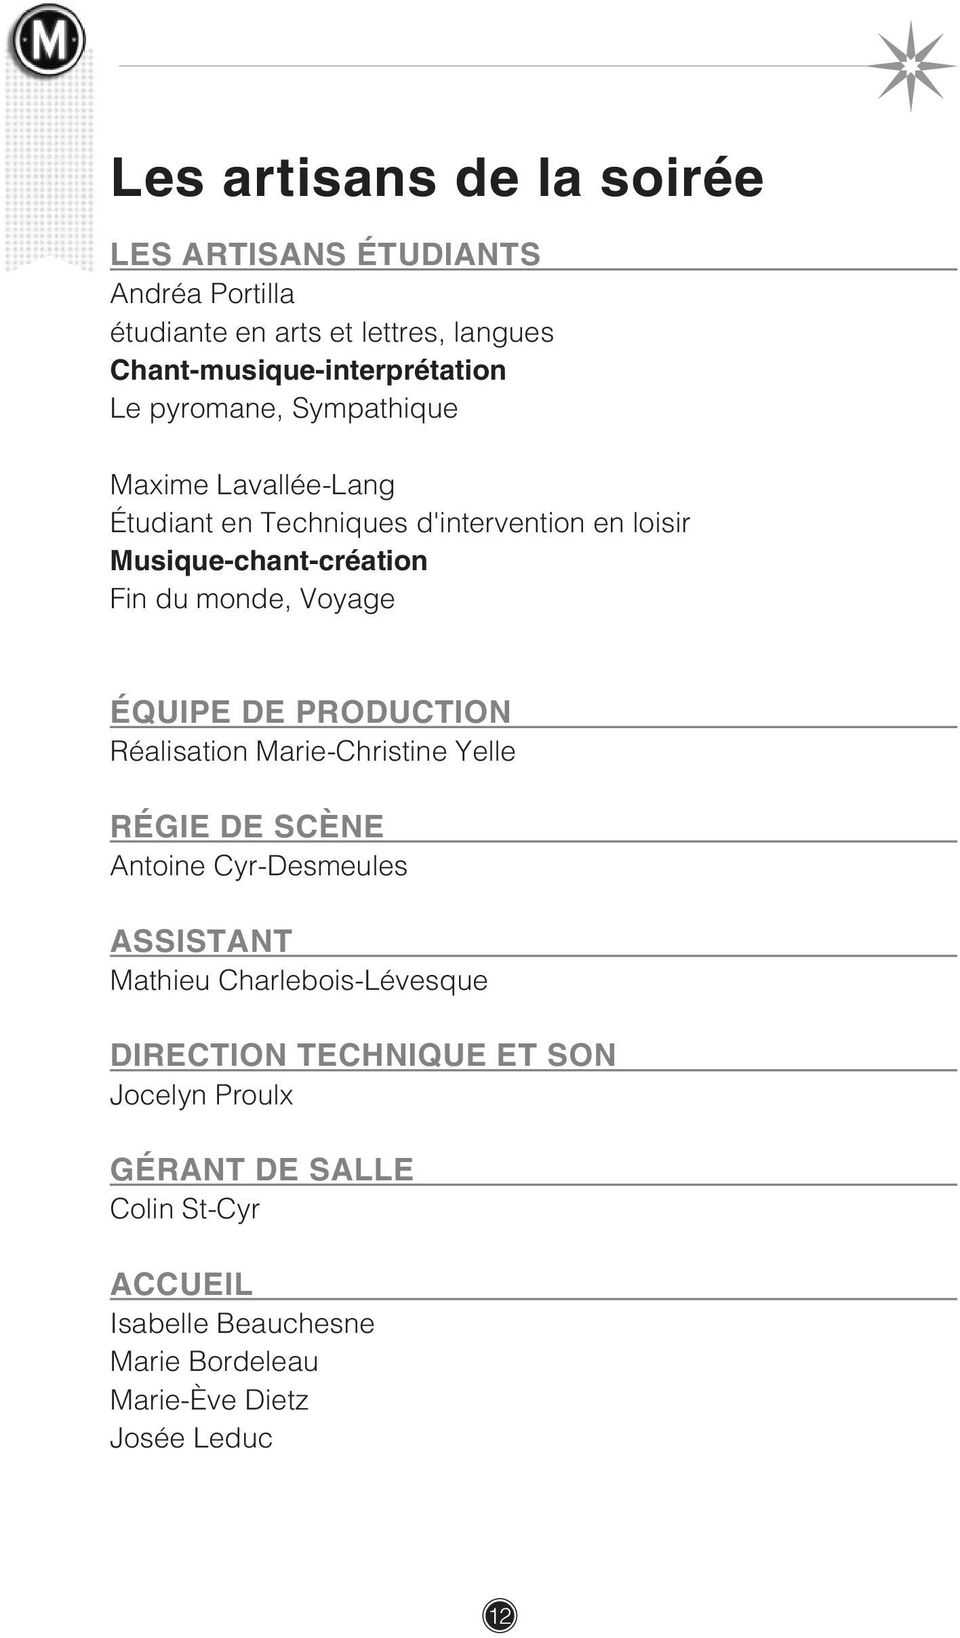 ÉQUIPE DE PRODUCTION Réalisation Marie-Christine Yelle RÉGIE DE SCÈNE Antoine Cyr-Desmeules ASSISTANT Mathieu Charlebois-Lévesque